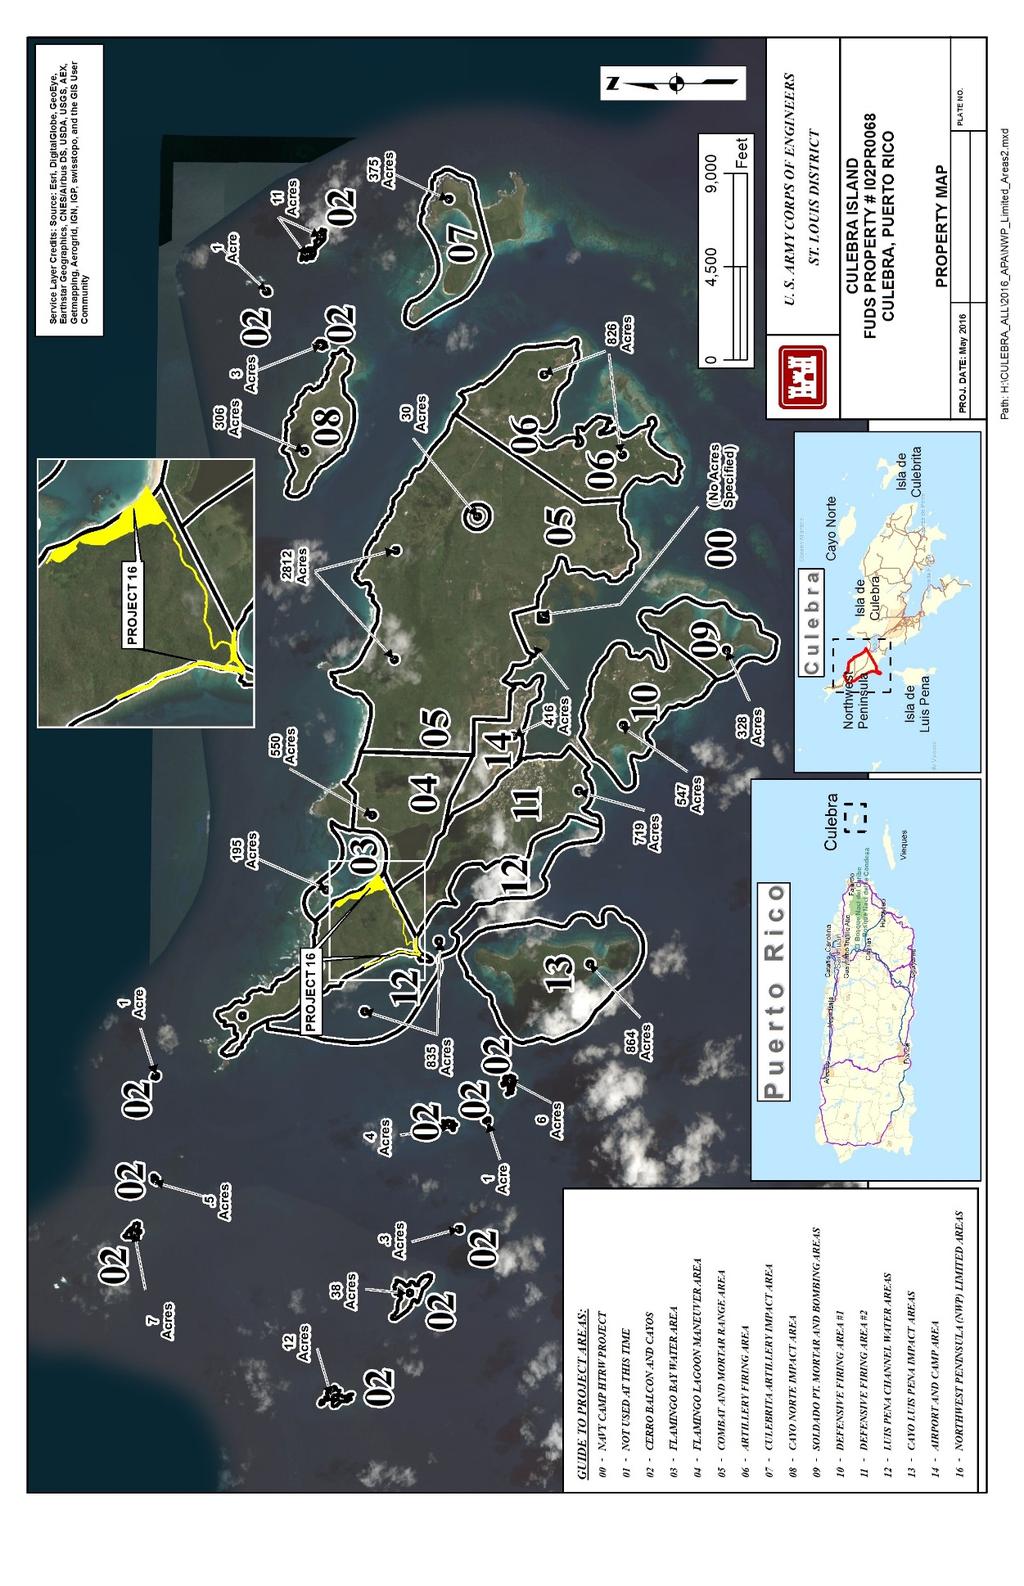 FUDS Property Name: Culebra Island